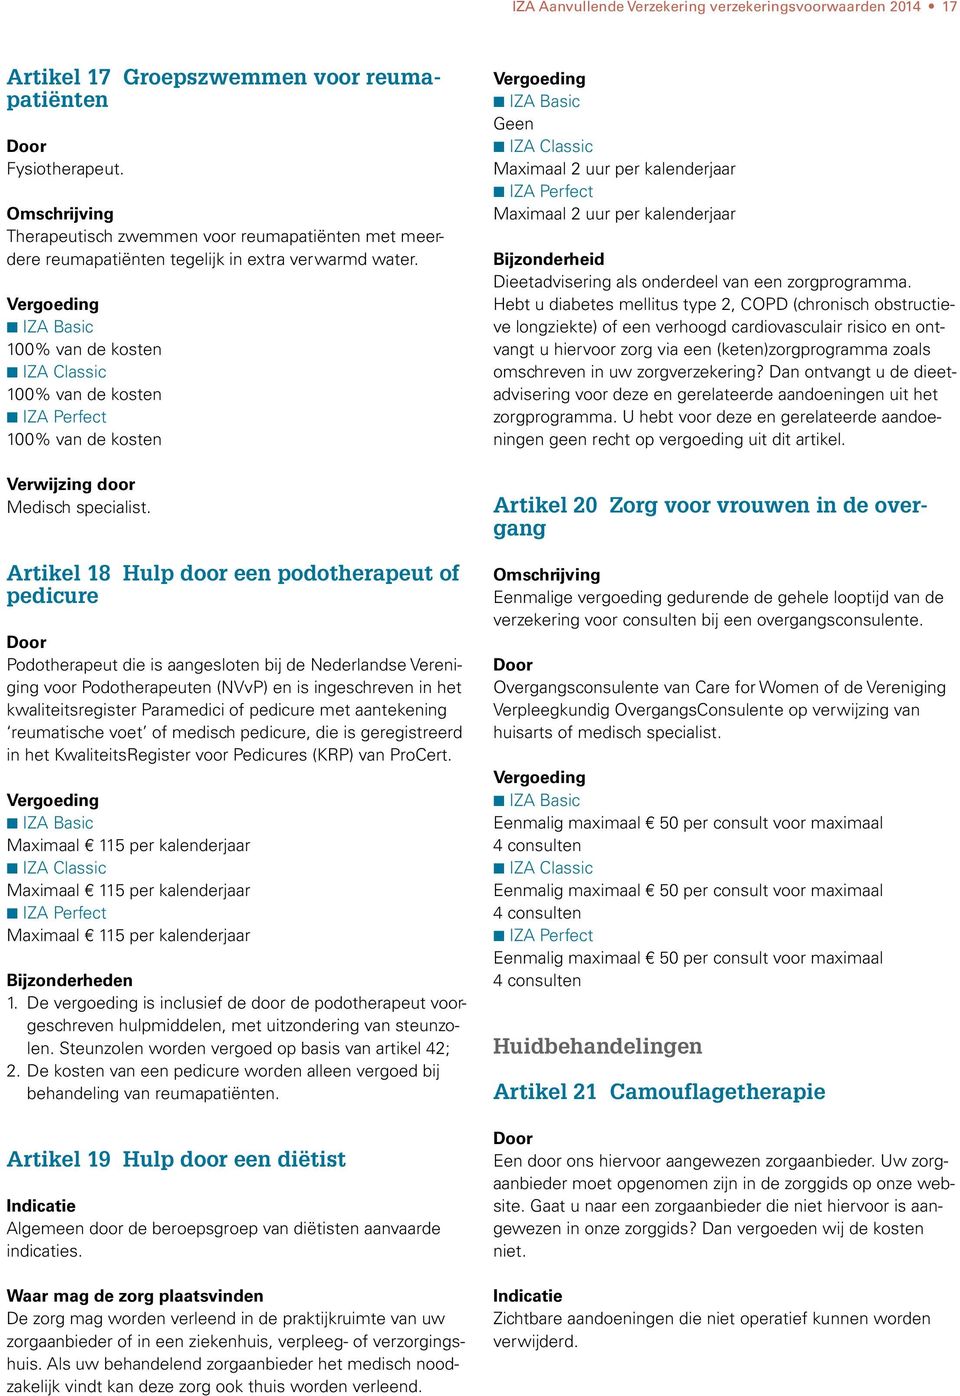 Artikel 18 Hulp door een podotherapeut of pedicure Podotherapeut die is aangesloten bij de Nederlandse Vereniging voor Podotherapeuten (NVvP) en is ingeschreven in het kwaliteitsregister Paramedici